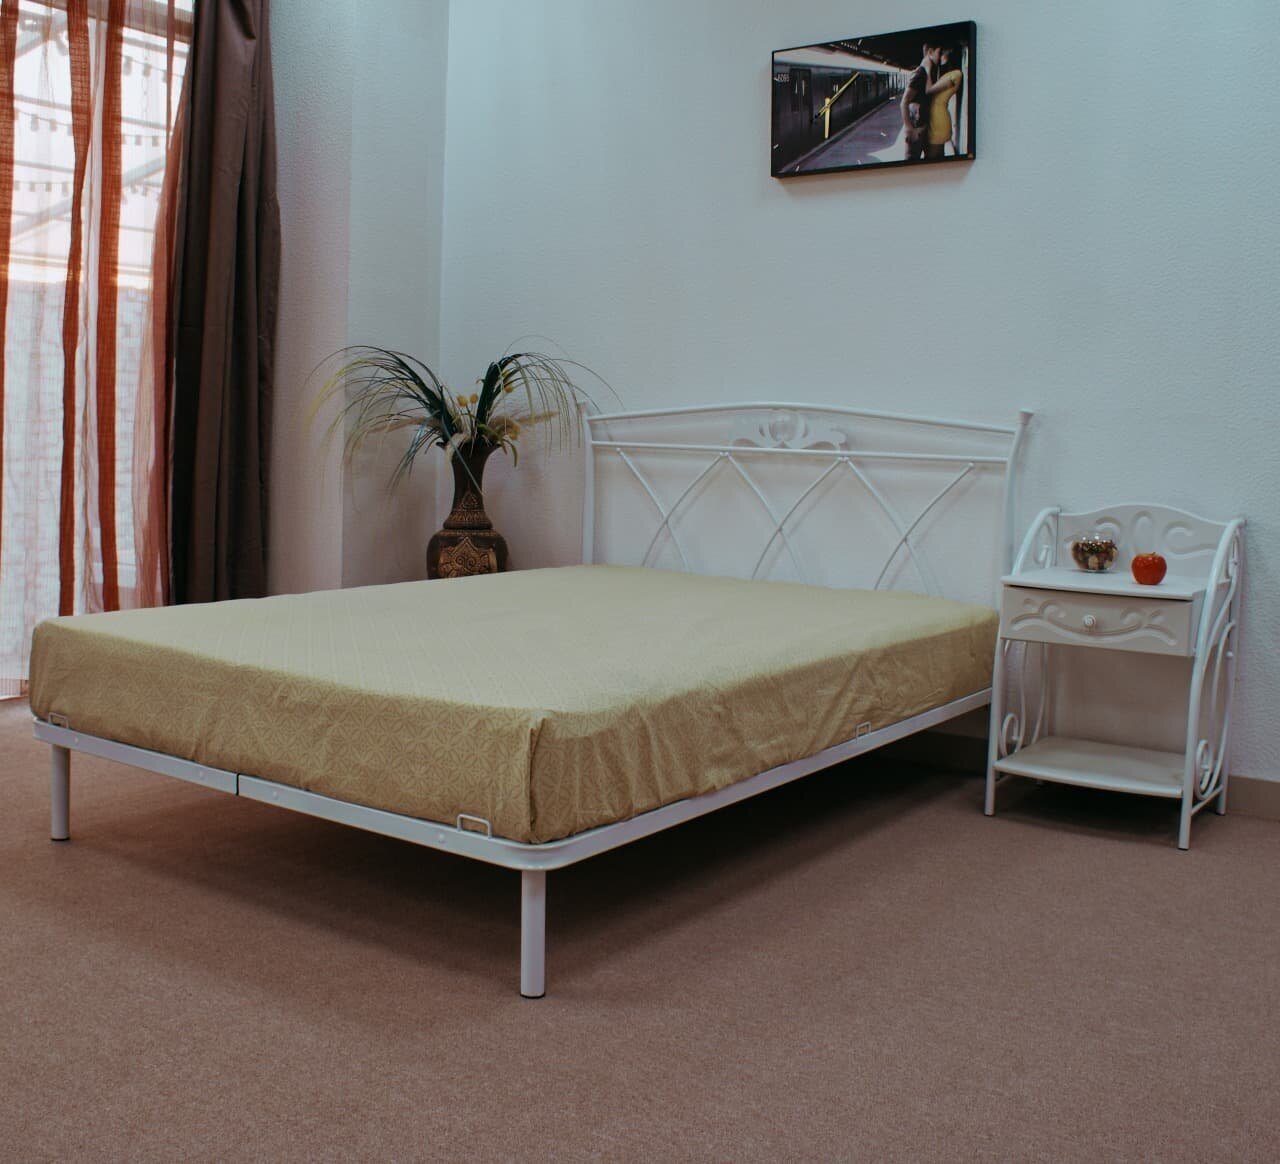 Кровать двуспальная Элеонора Поллет 140*200 см железная прочная белая